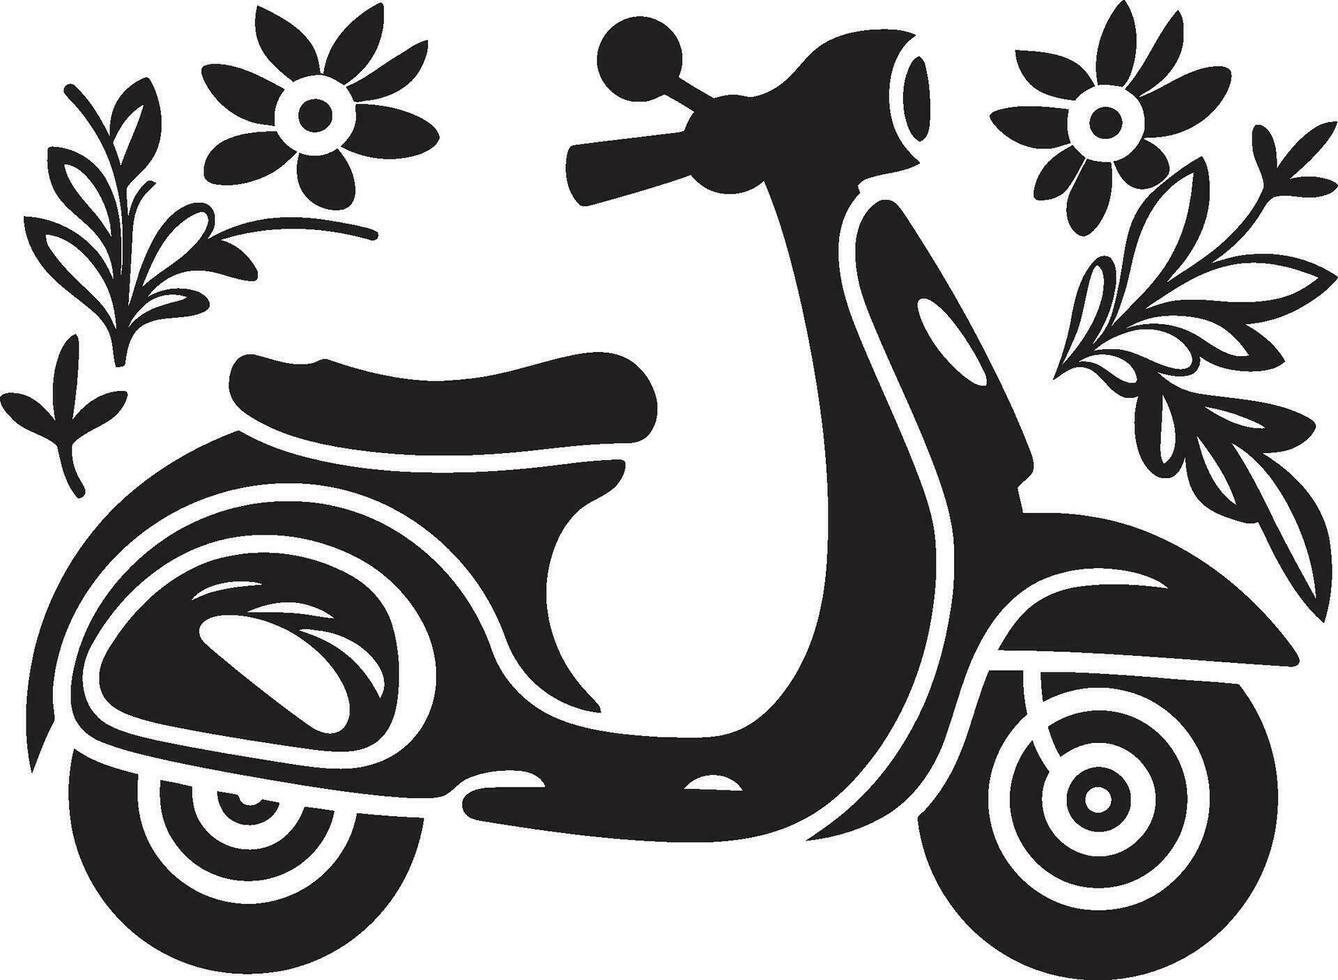 métropolitain planer dynamique vecteur logo conception scooters Urbain élégance iconique emblème icône